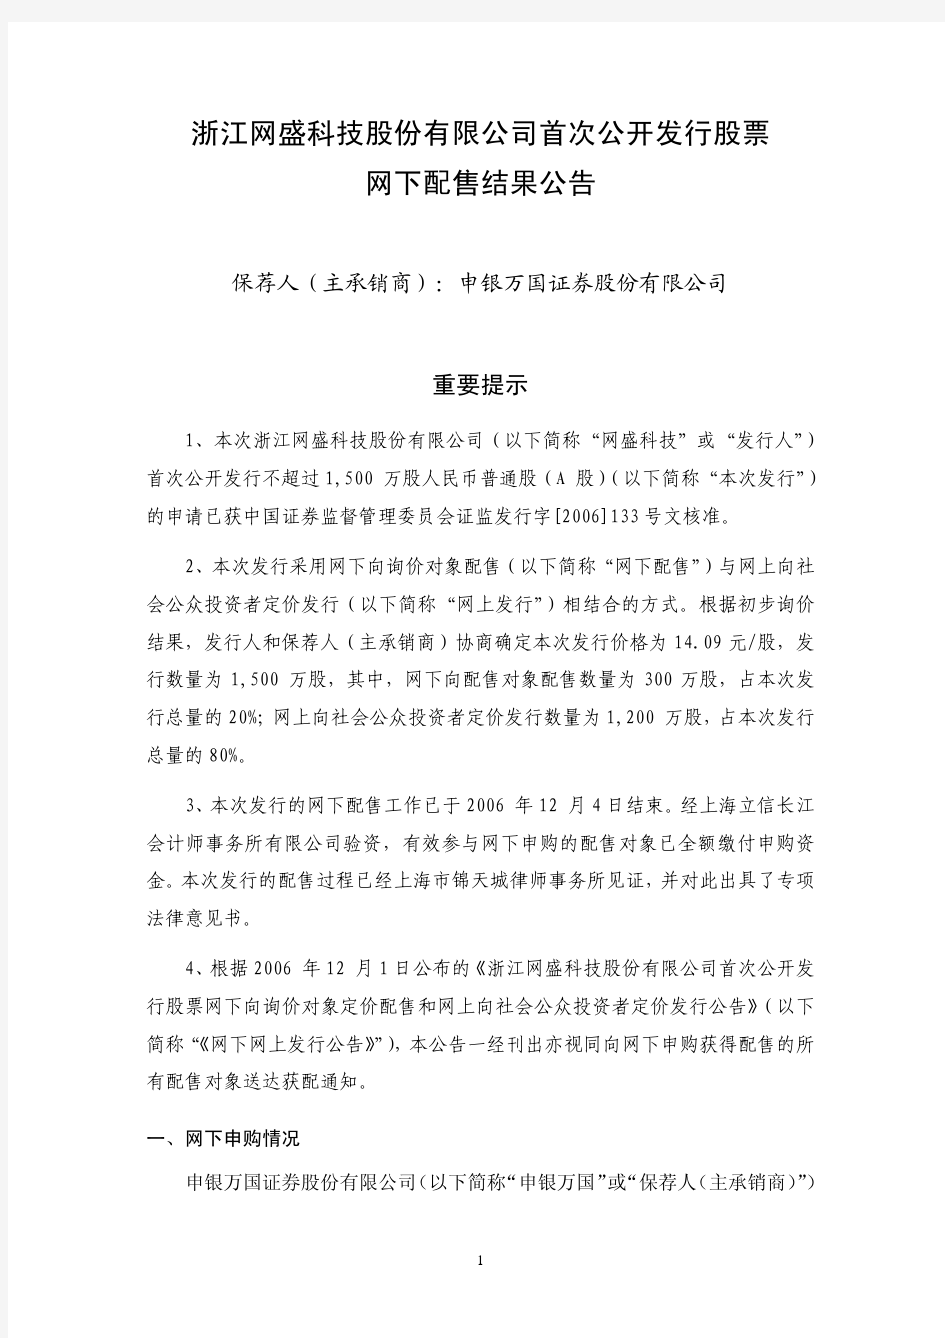 浙江网盛科技股份有限公司首次公开发行股票网下配售结果公告